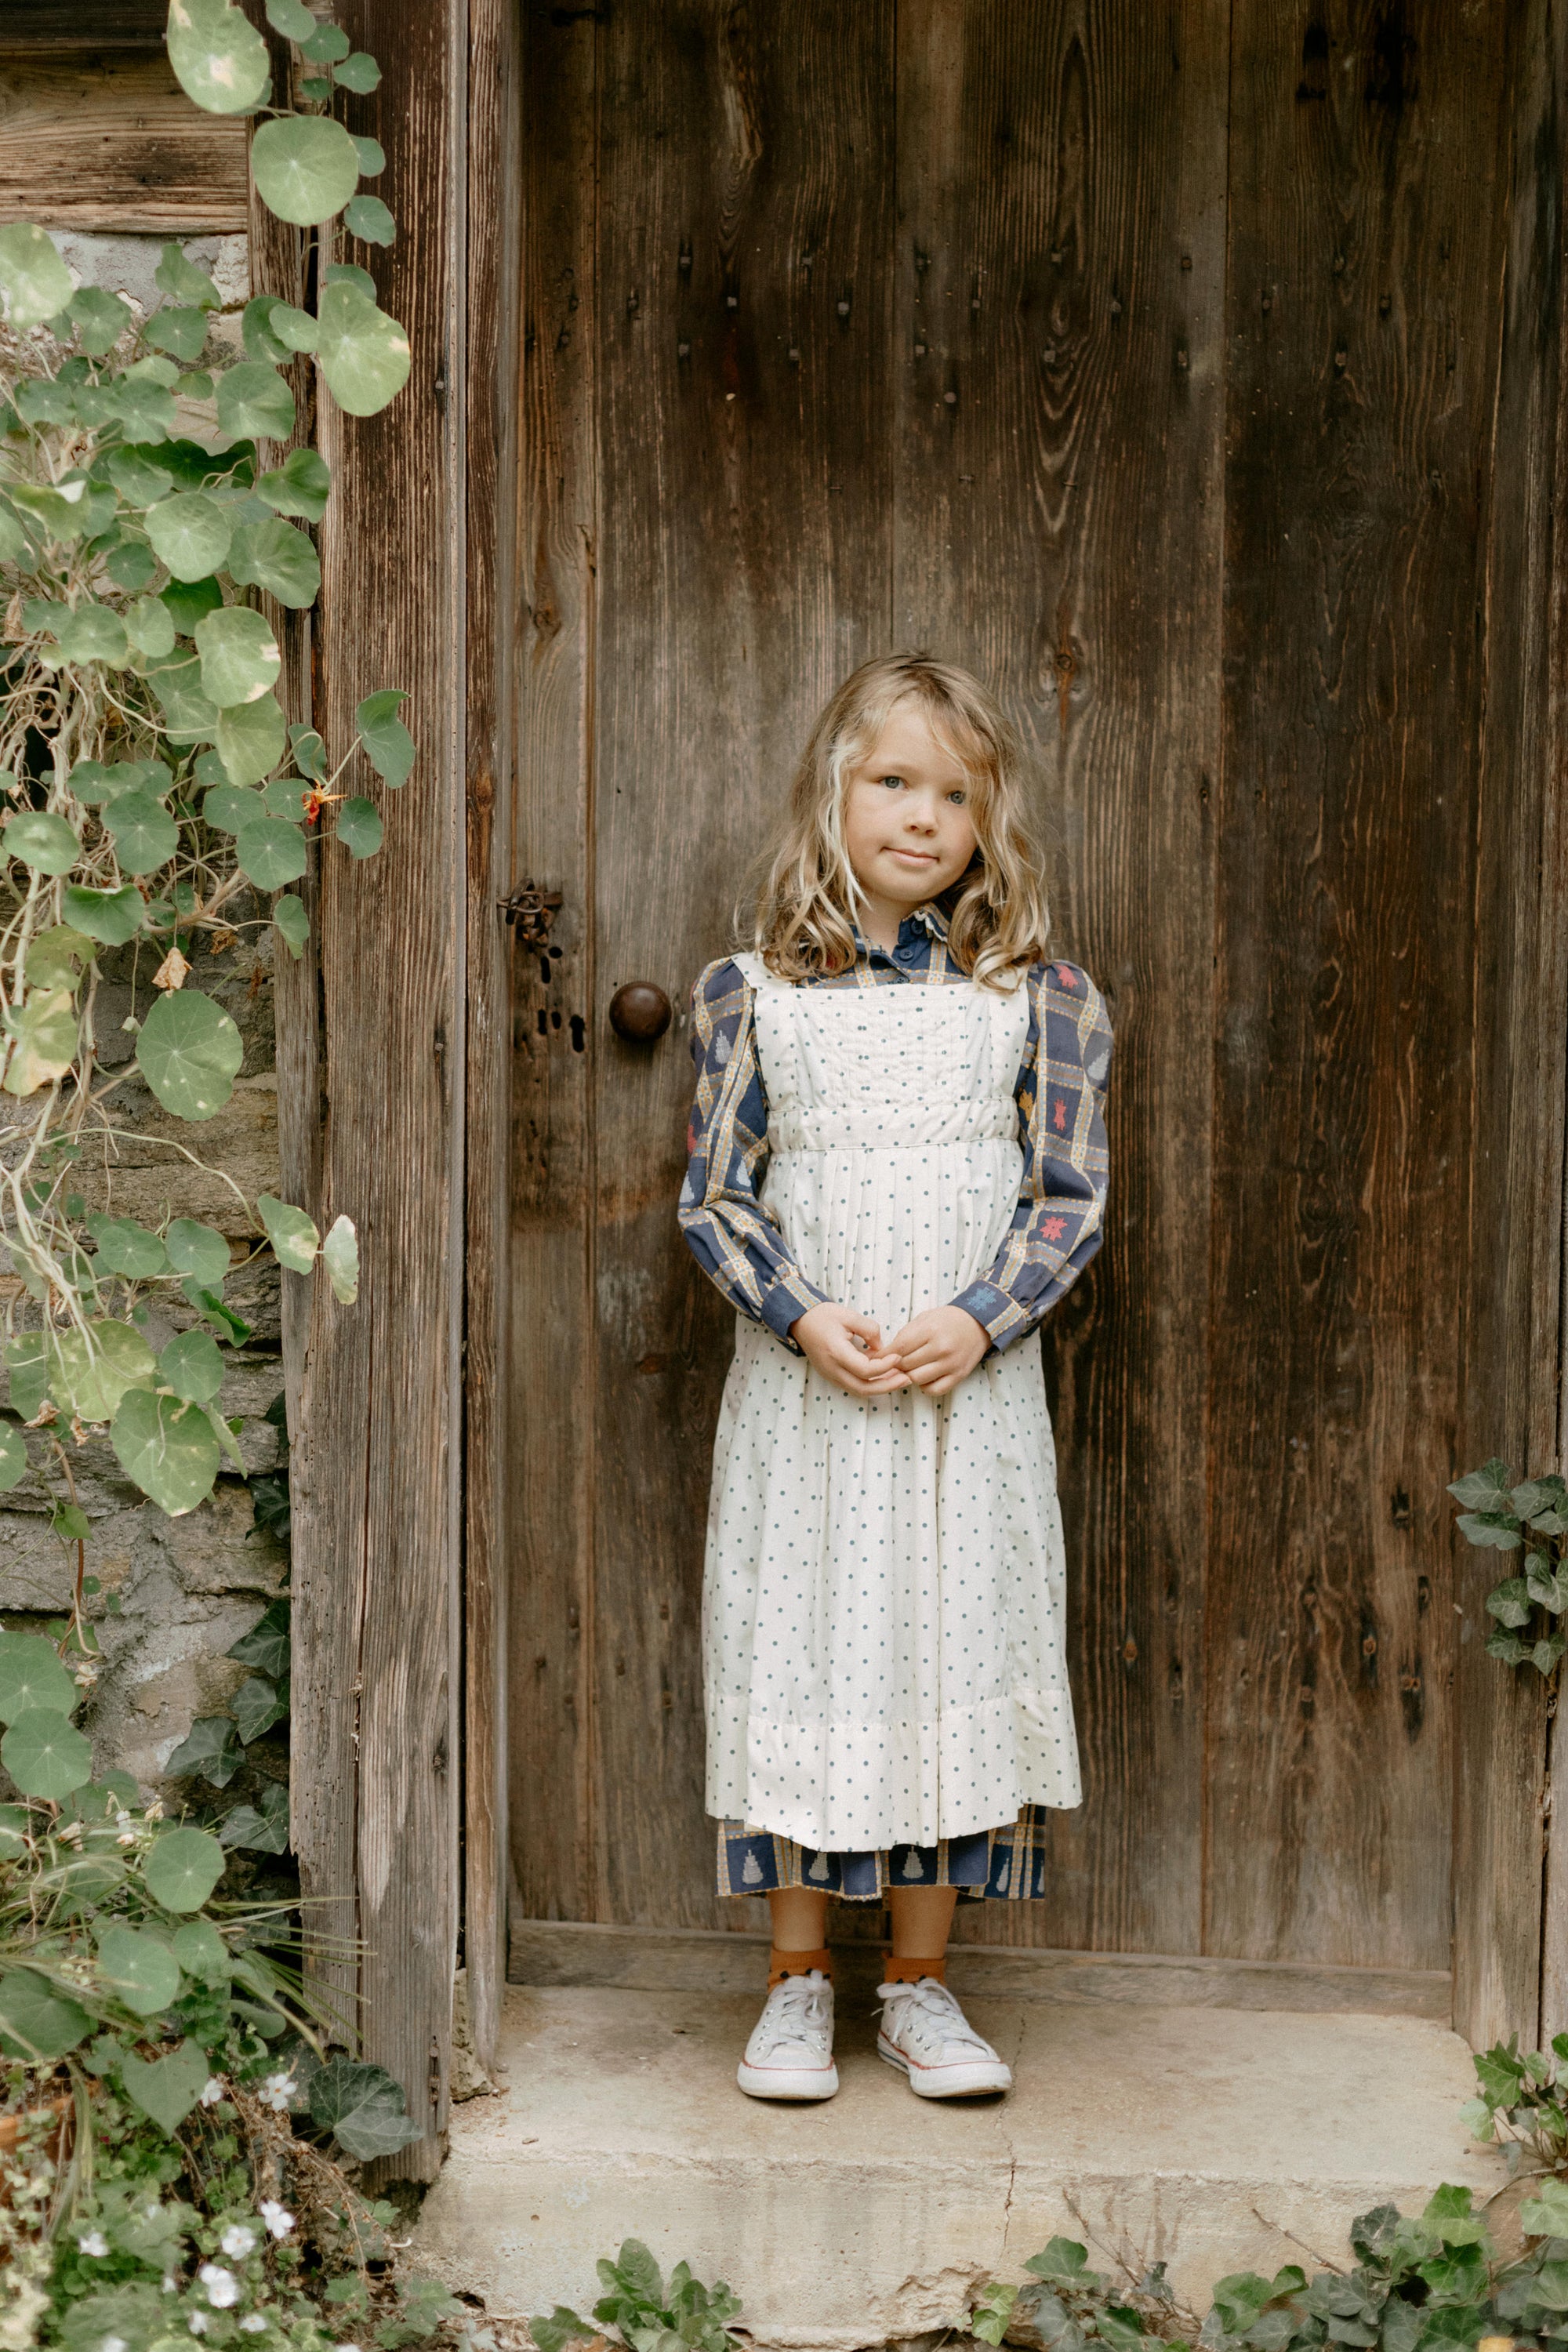 213 Child's Prairie Dress & Pinafore